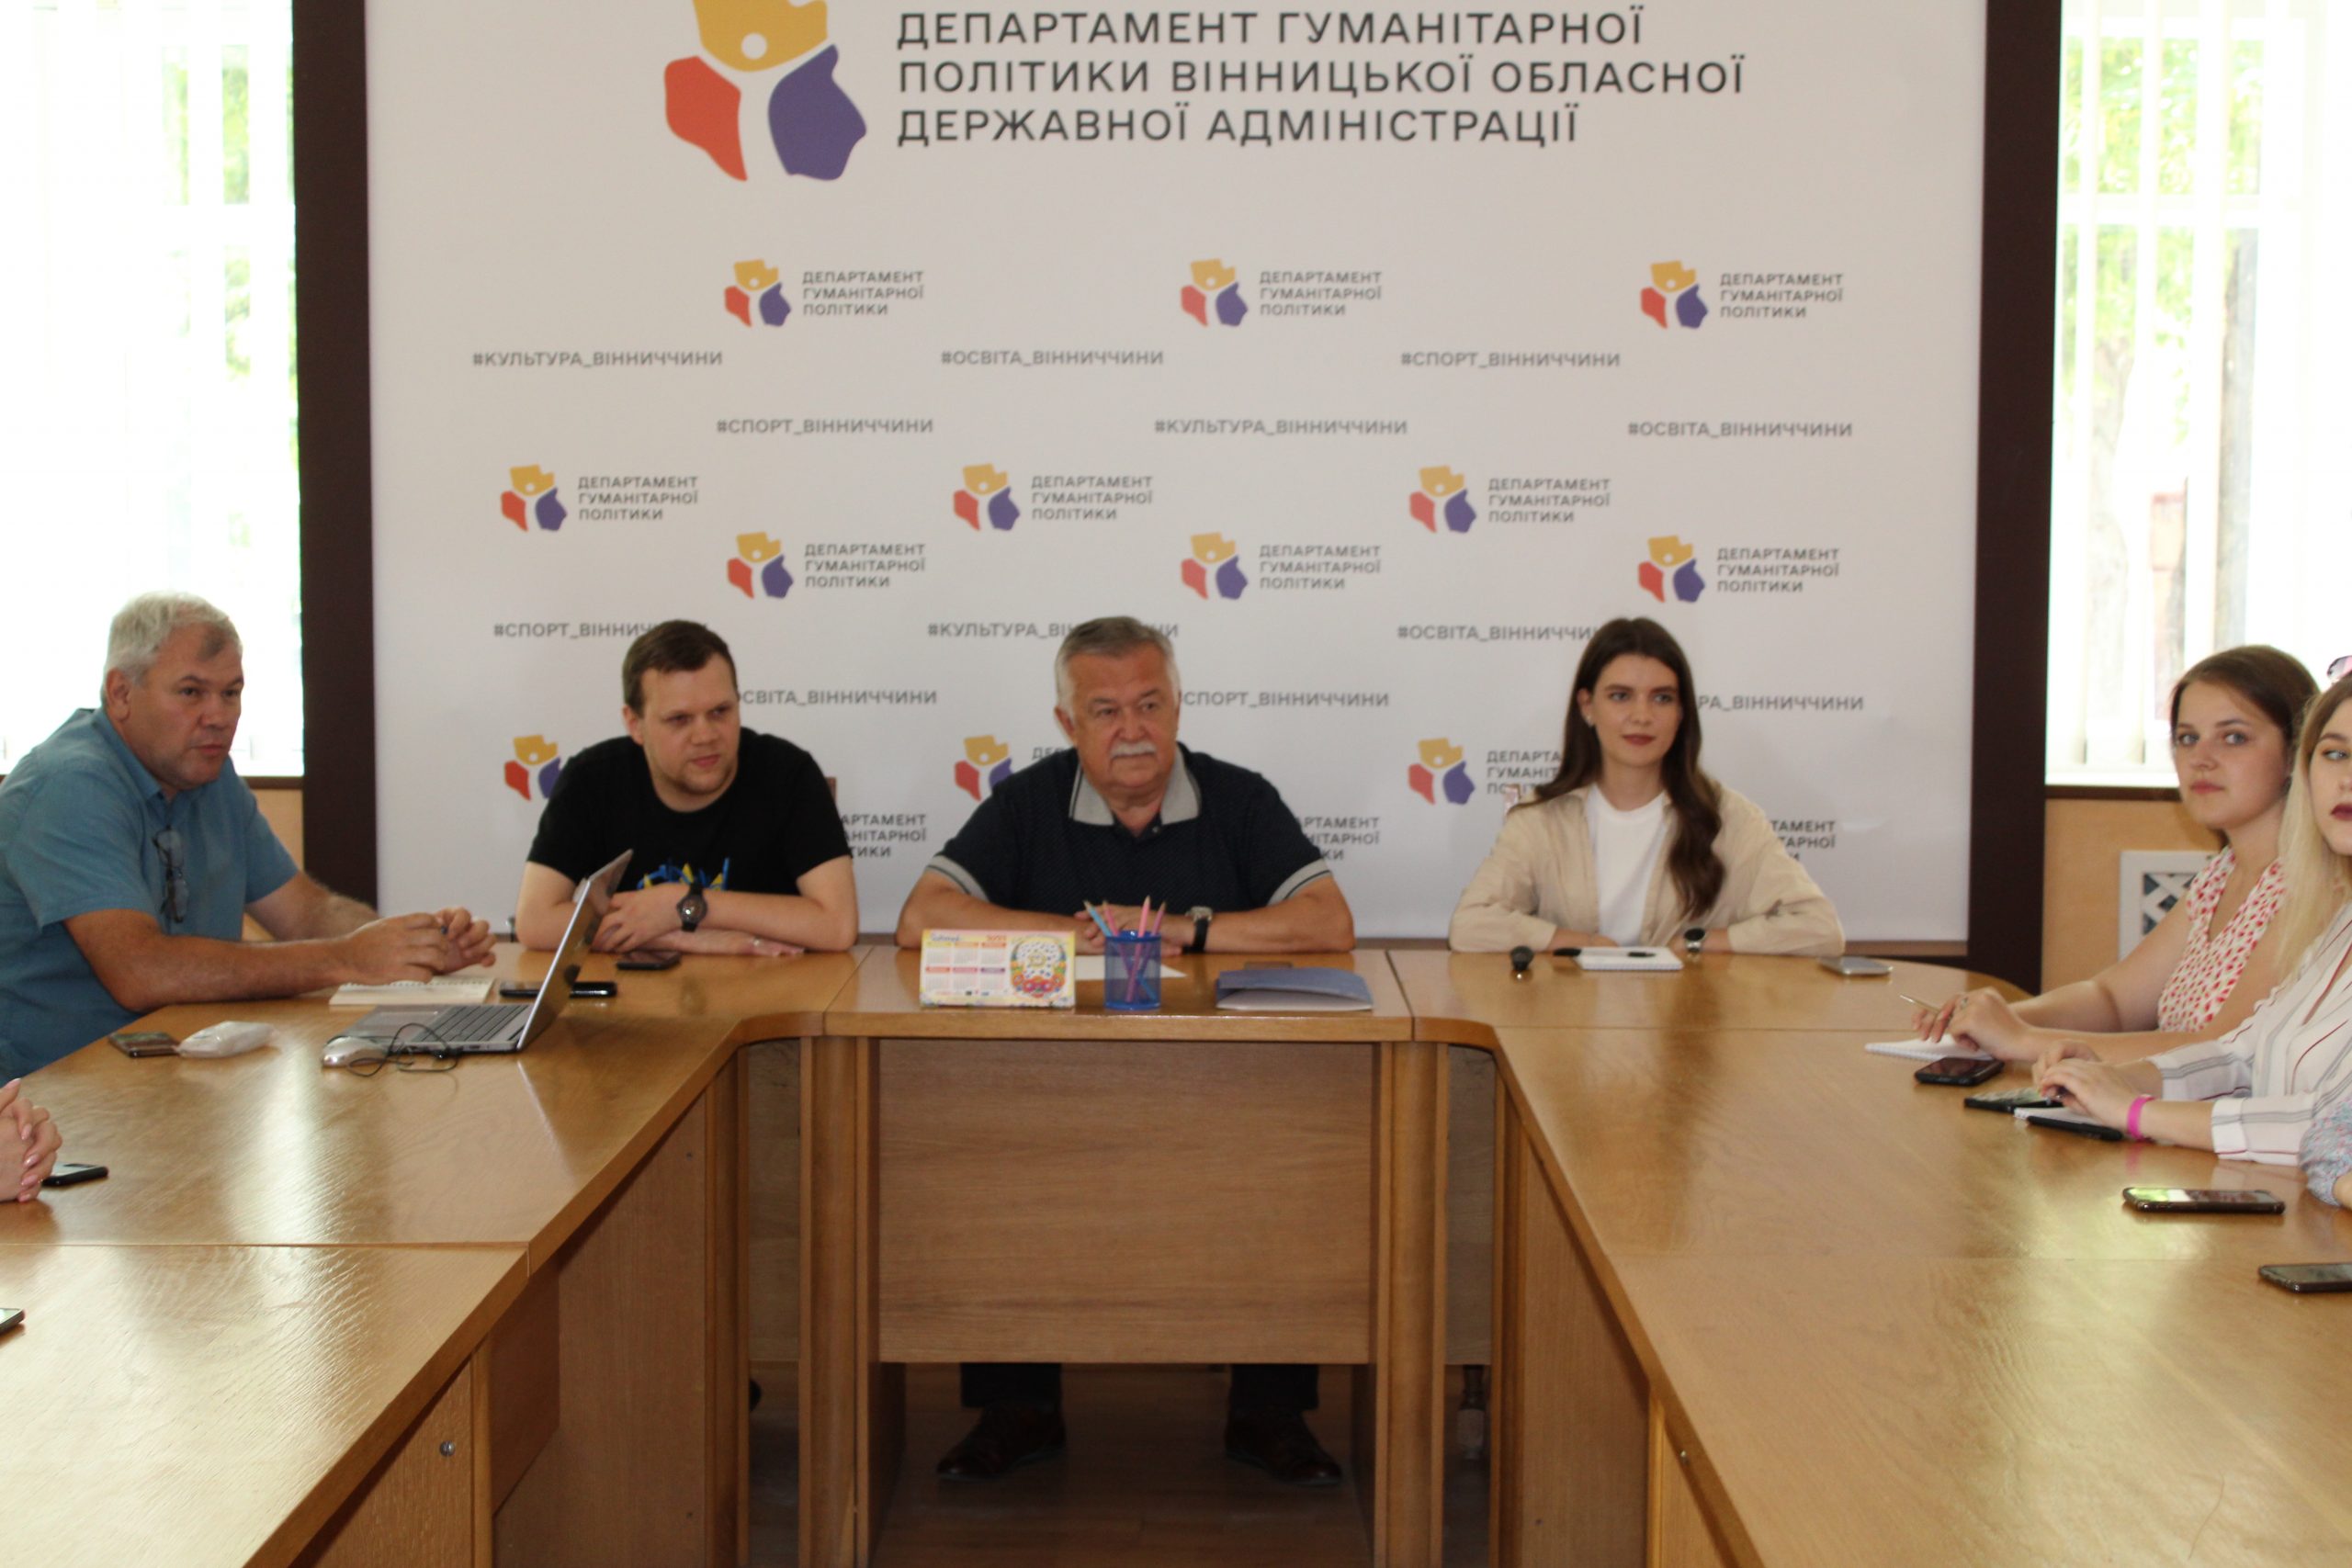 Студентська рада Вінниччини зустрілася із керівництвом Департаменту гуманітарної політики